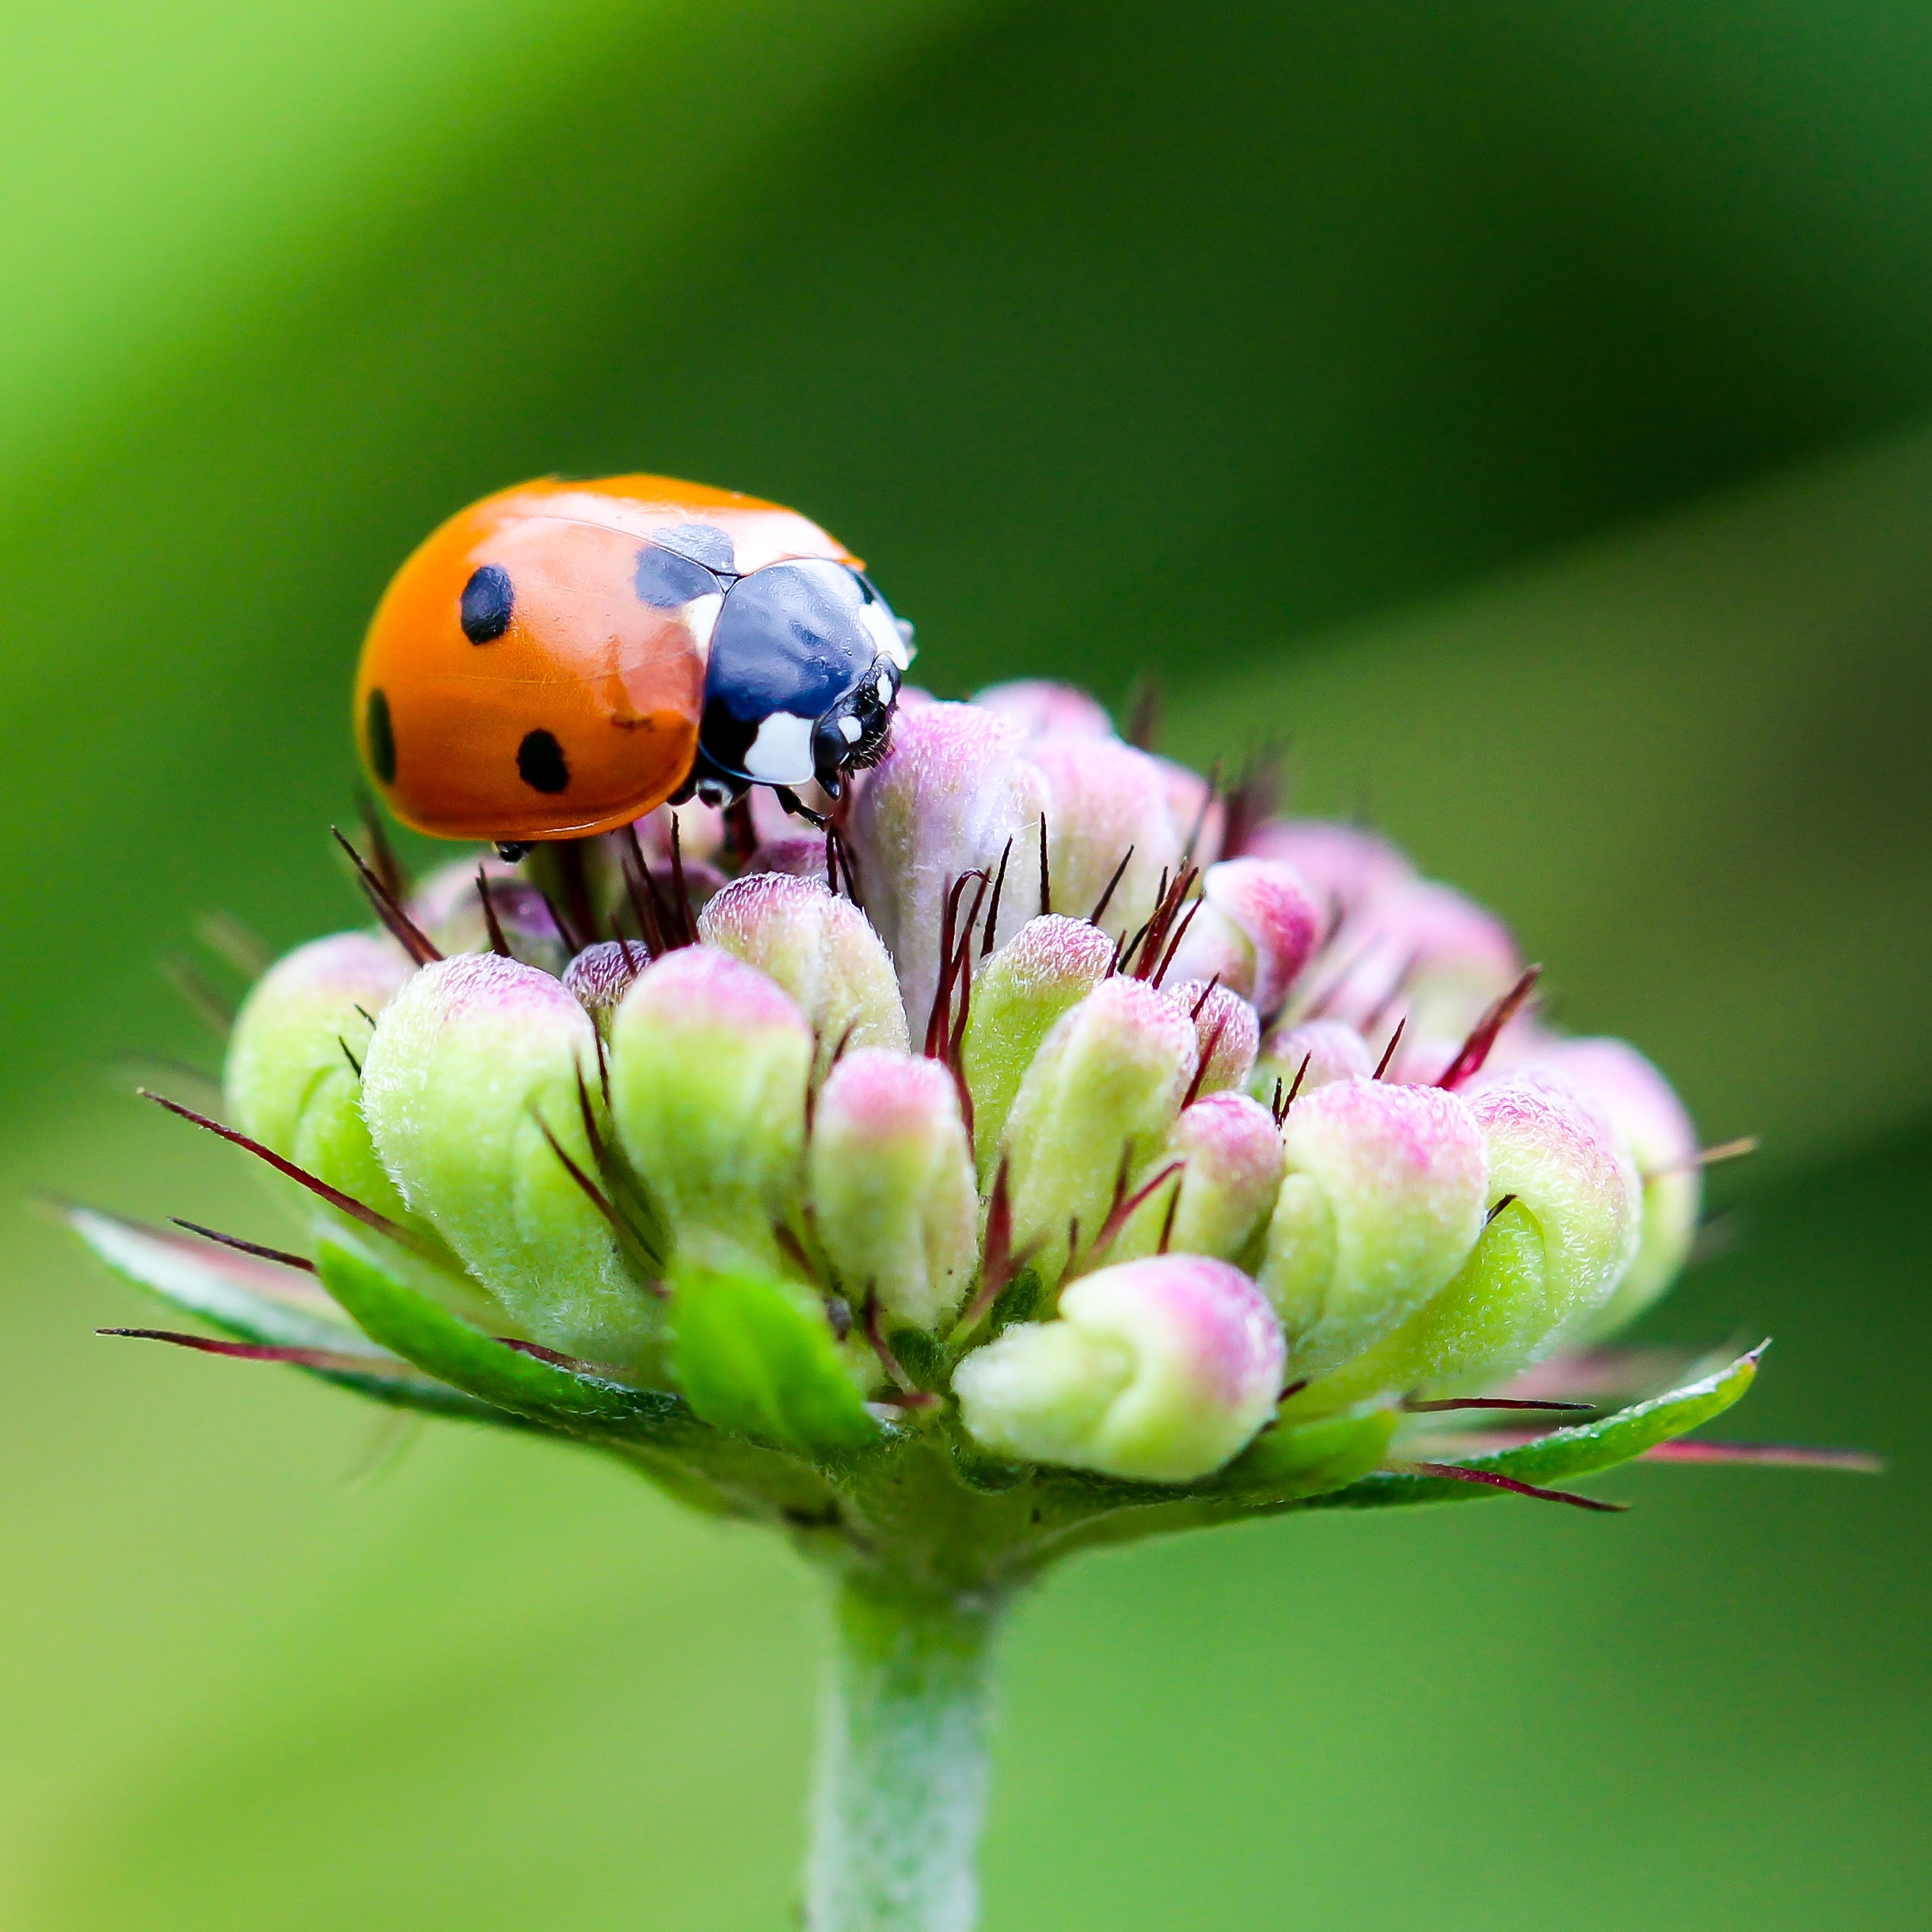 Free photo A ladybug on a flower